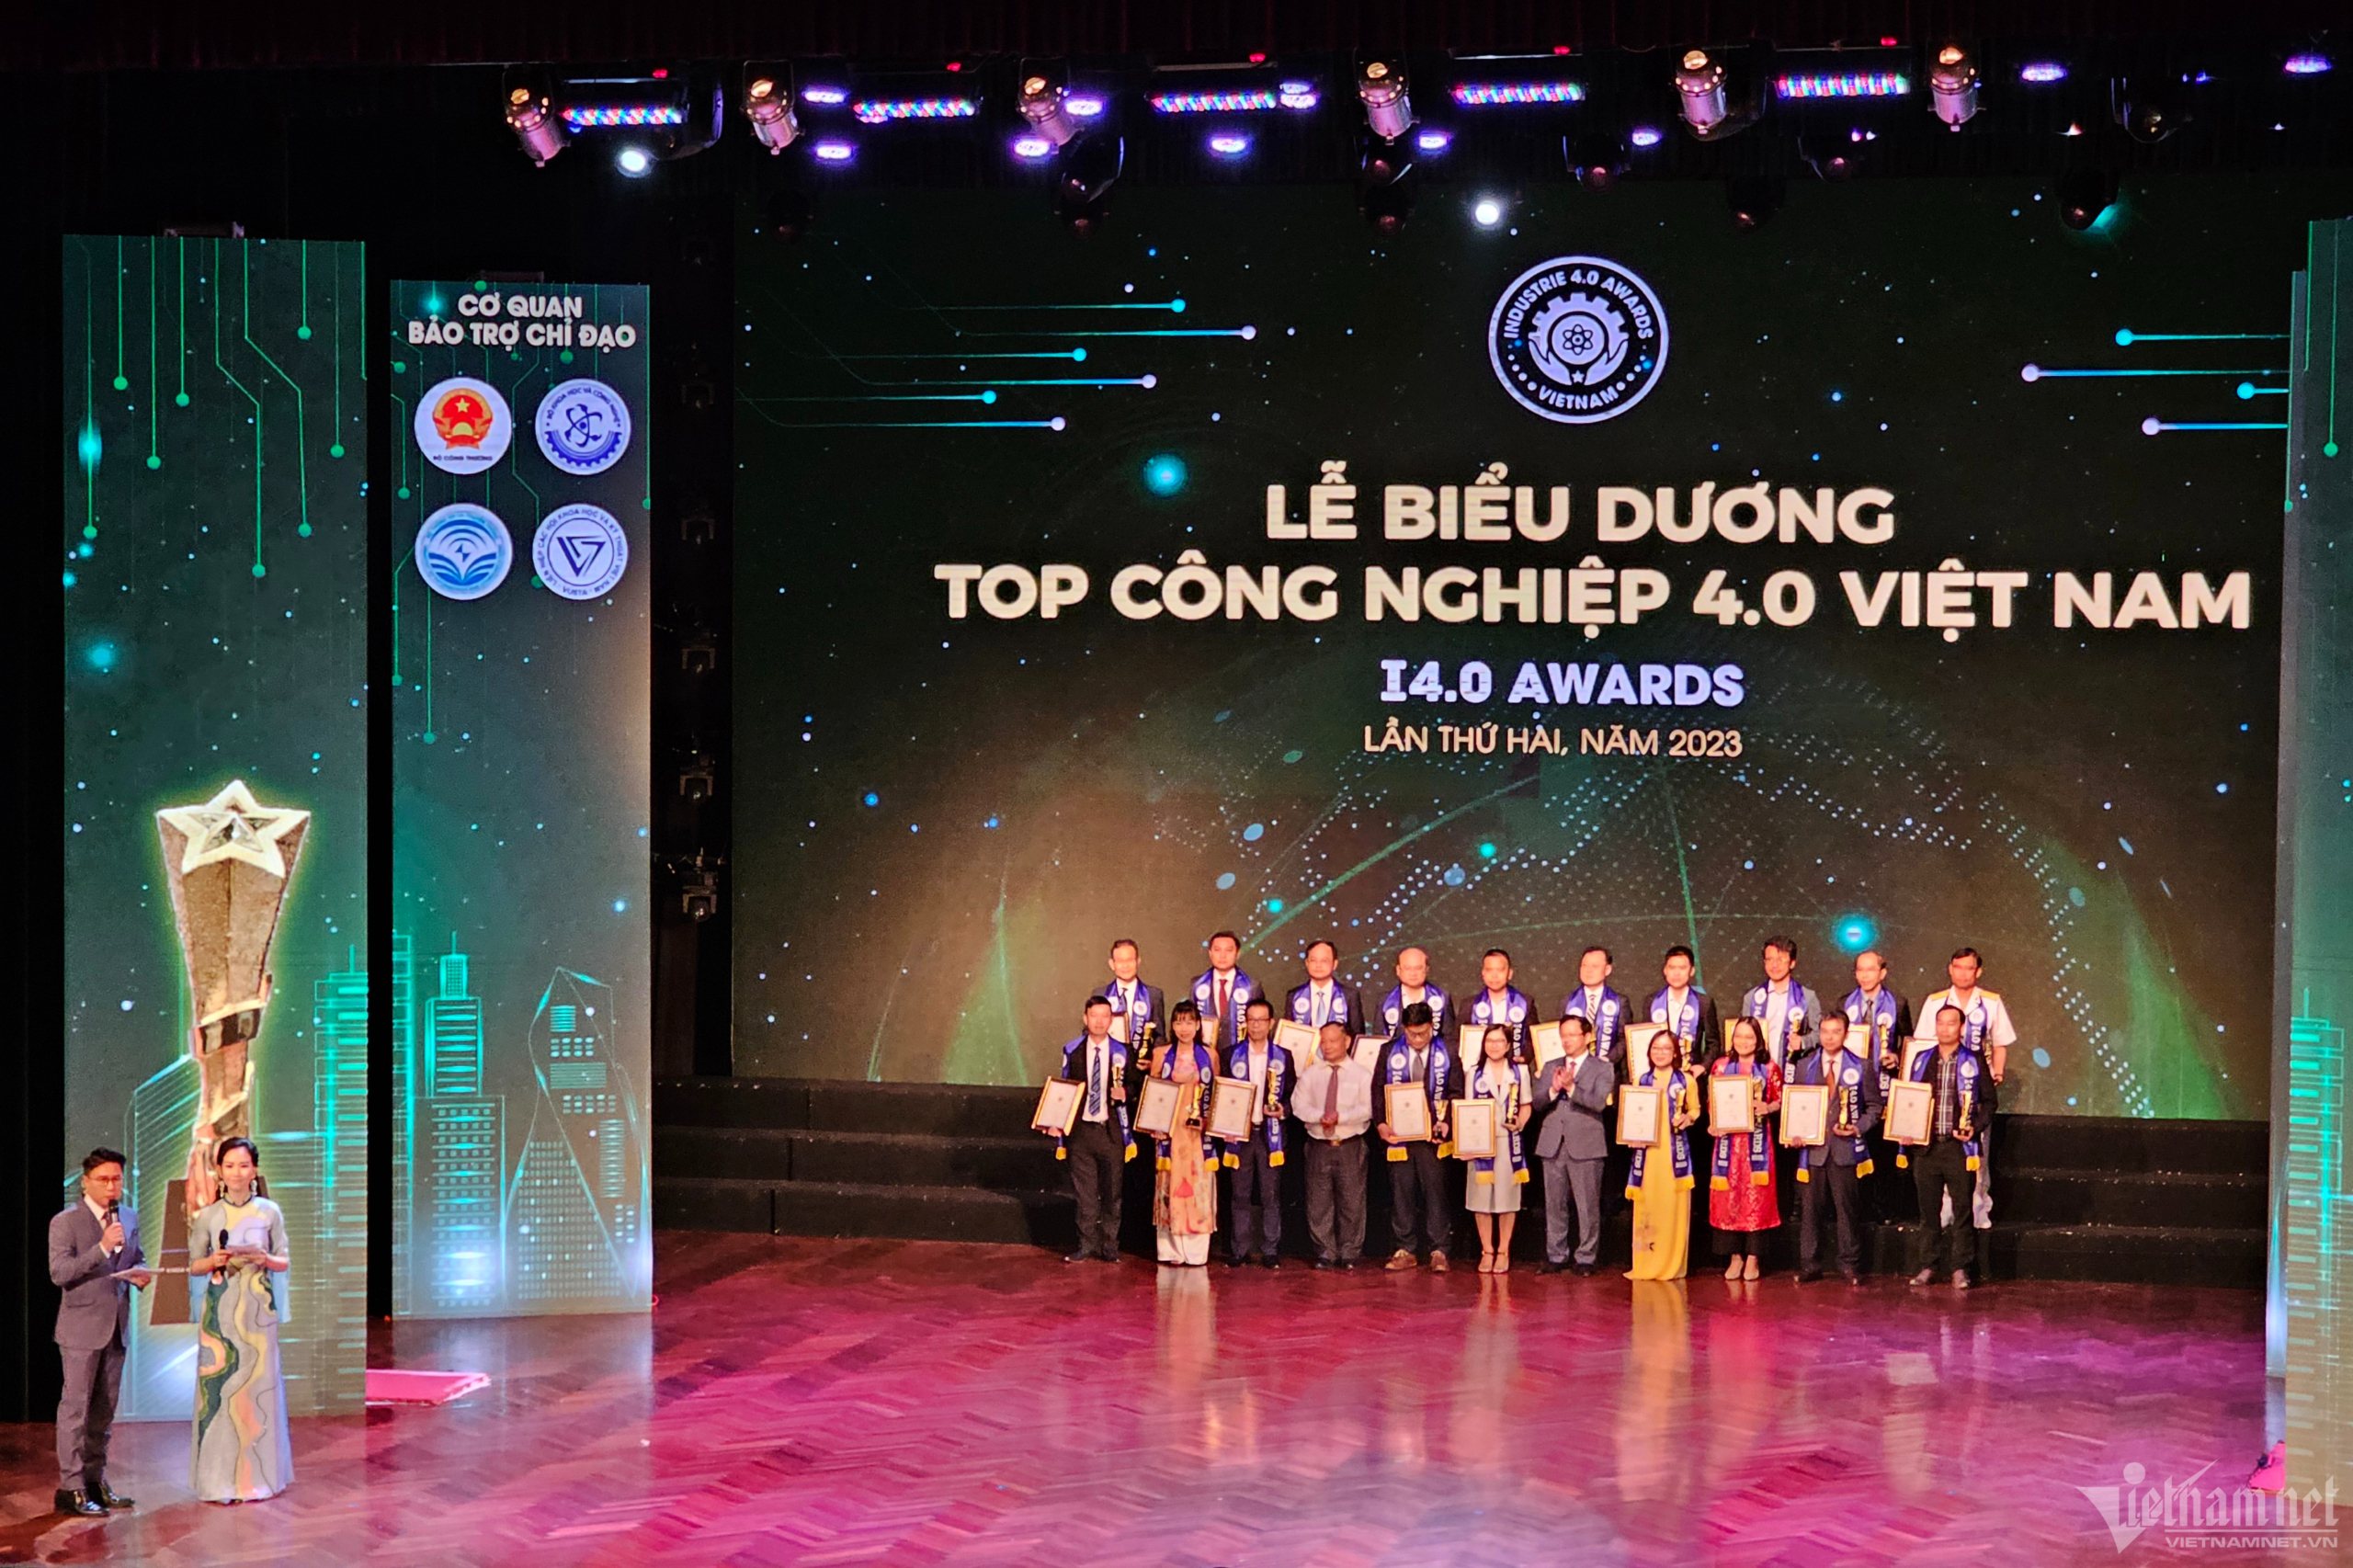 Lễ biểu dương “Top Công nghiệp 4.0 Việt Nam - I4.0 Awards" năm 2023